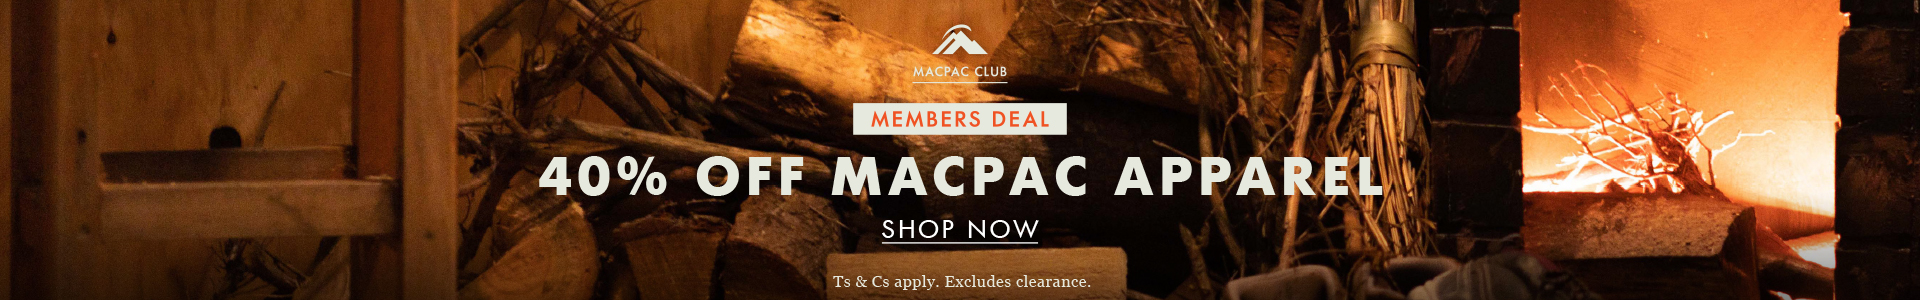 40% OFF Macpac apparel for members